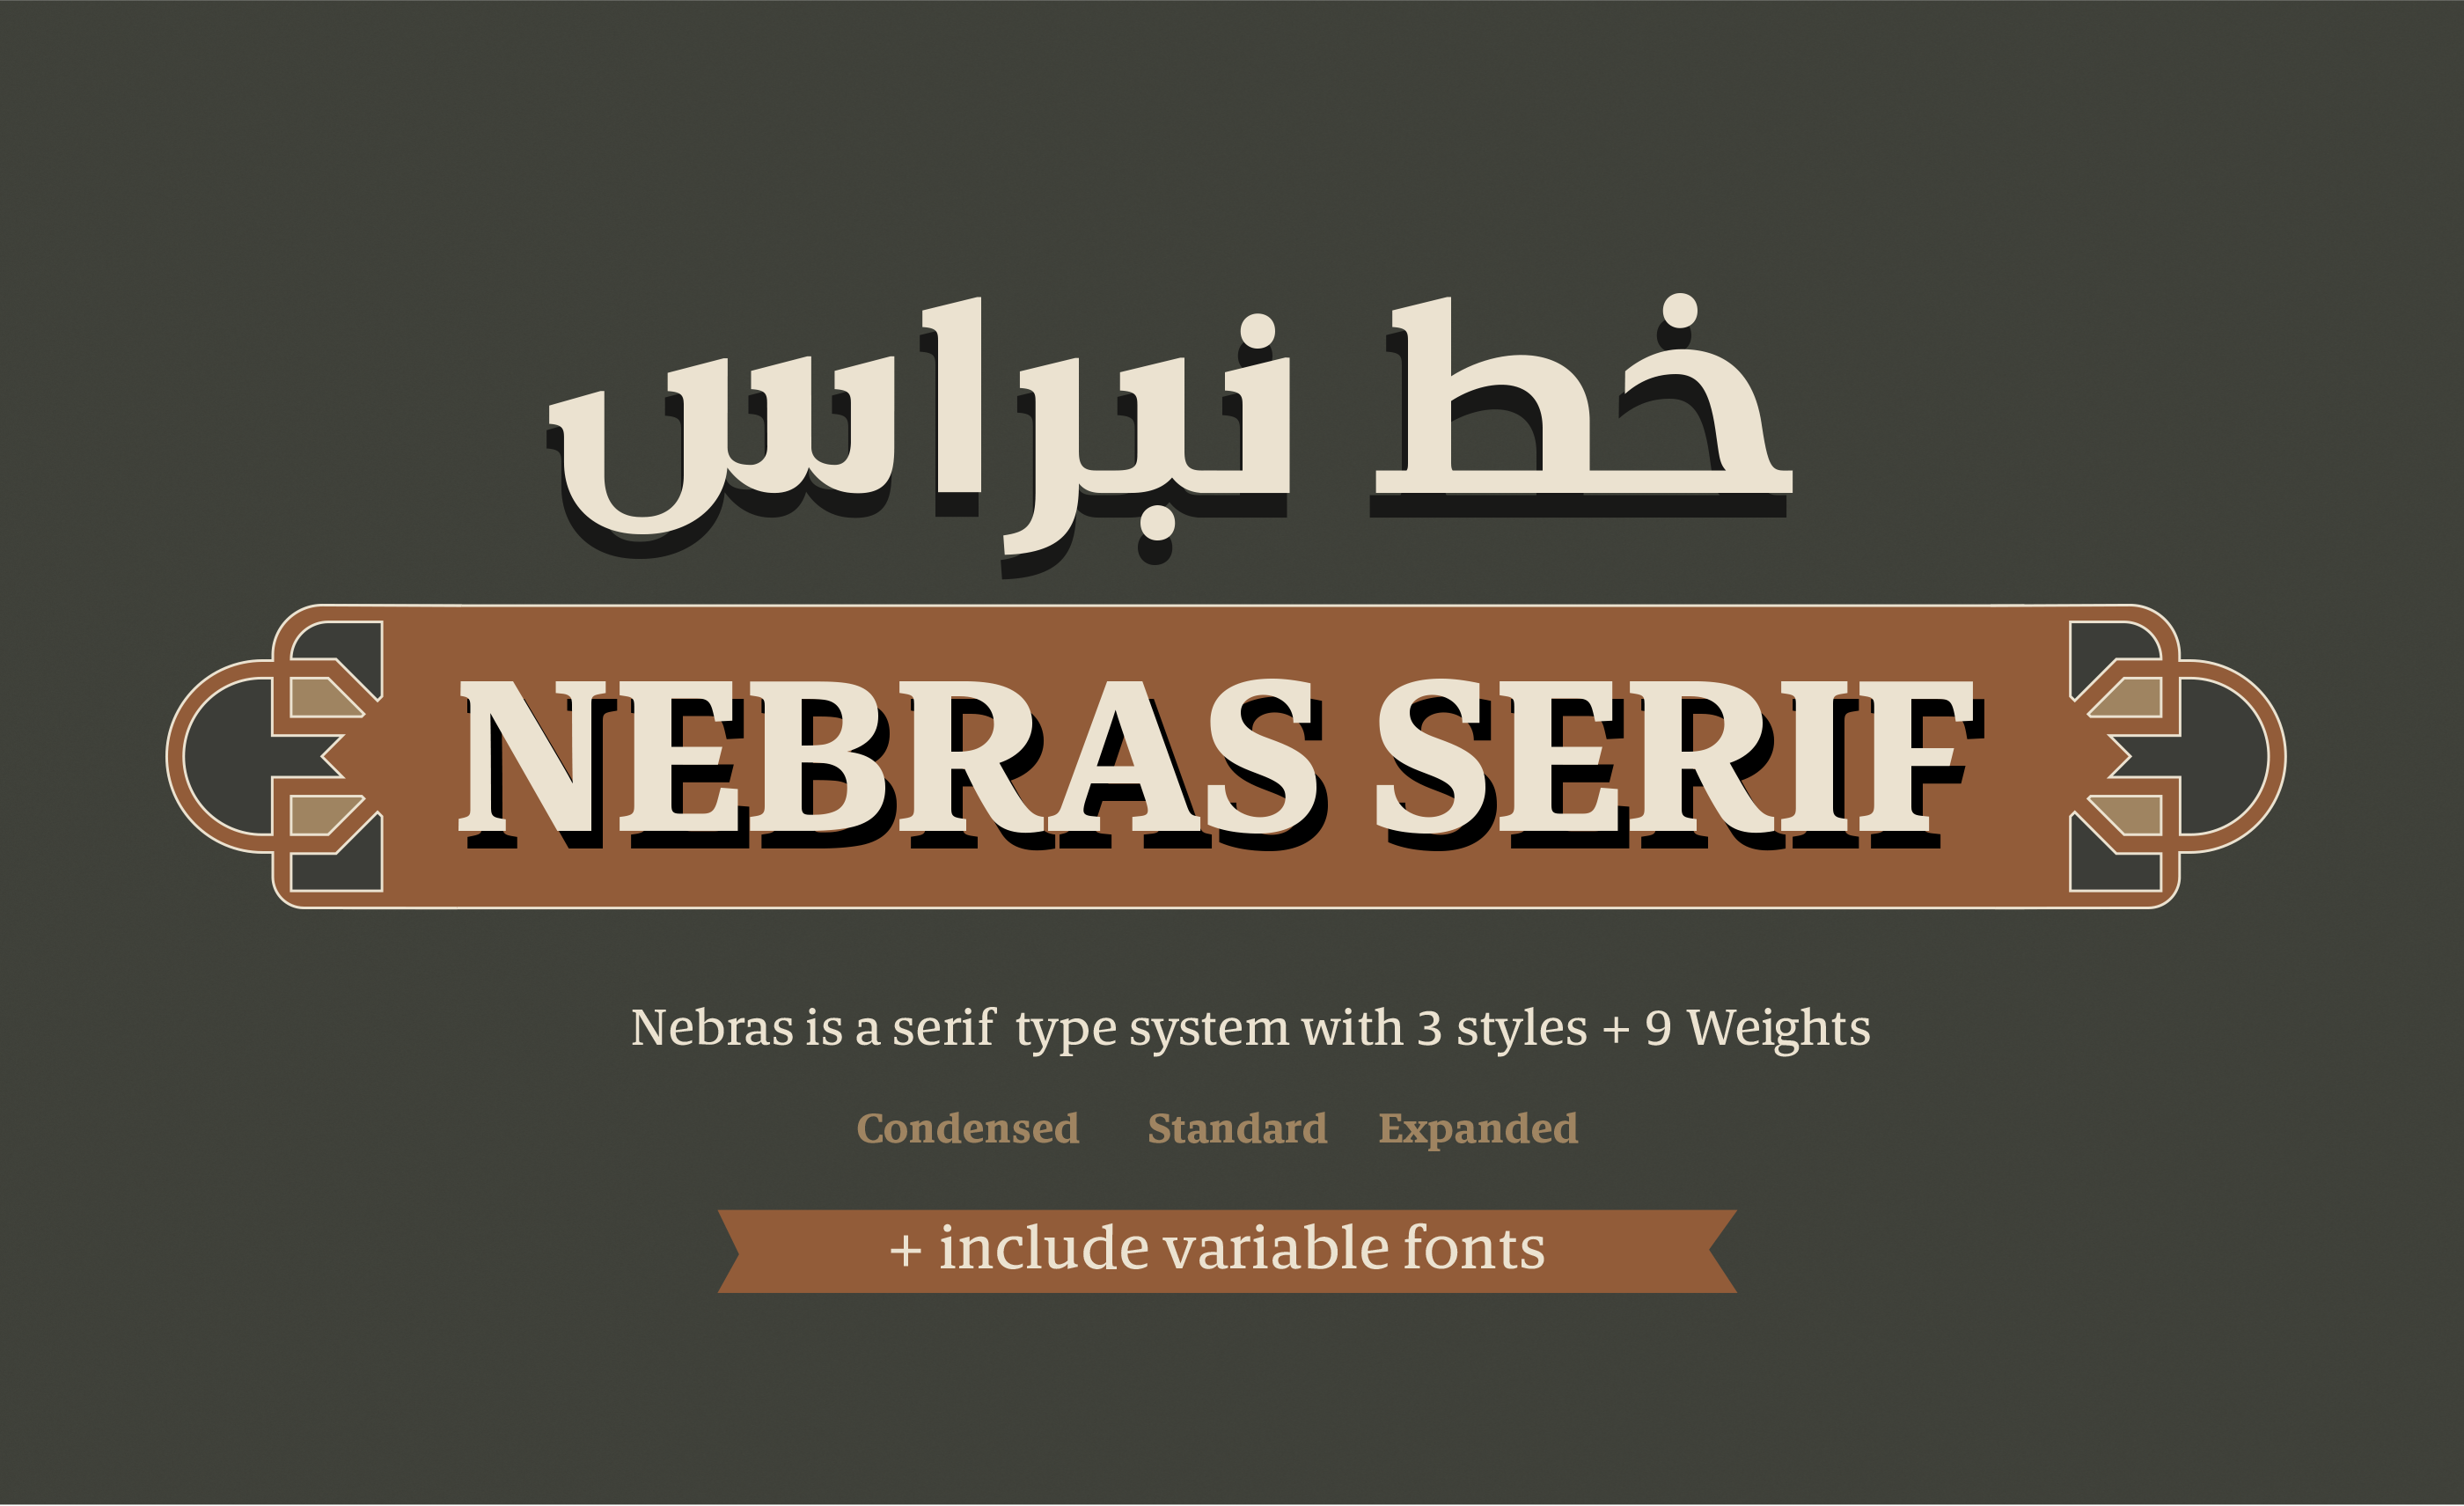 Beispiel einer Nebras Serif Condensed-Schriftart